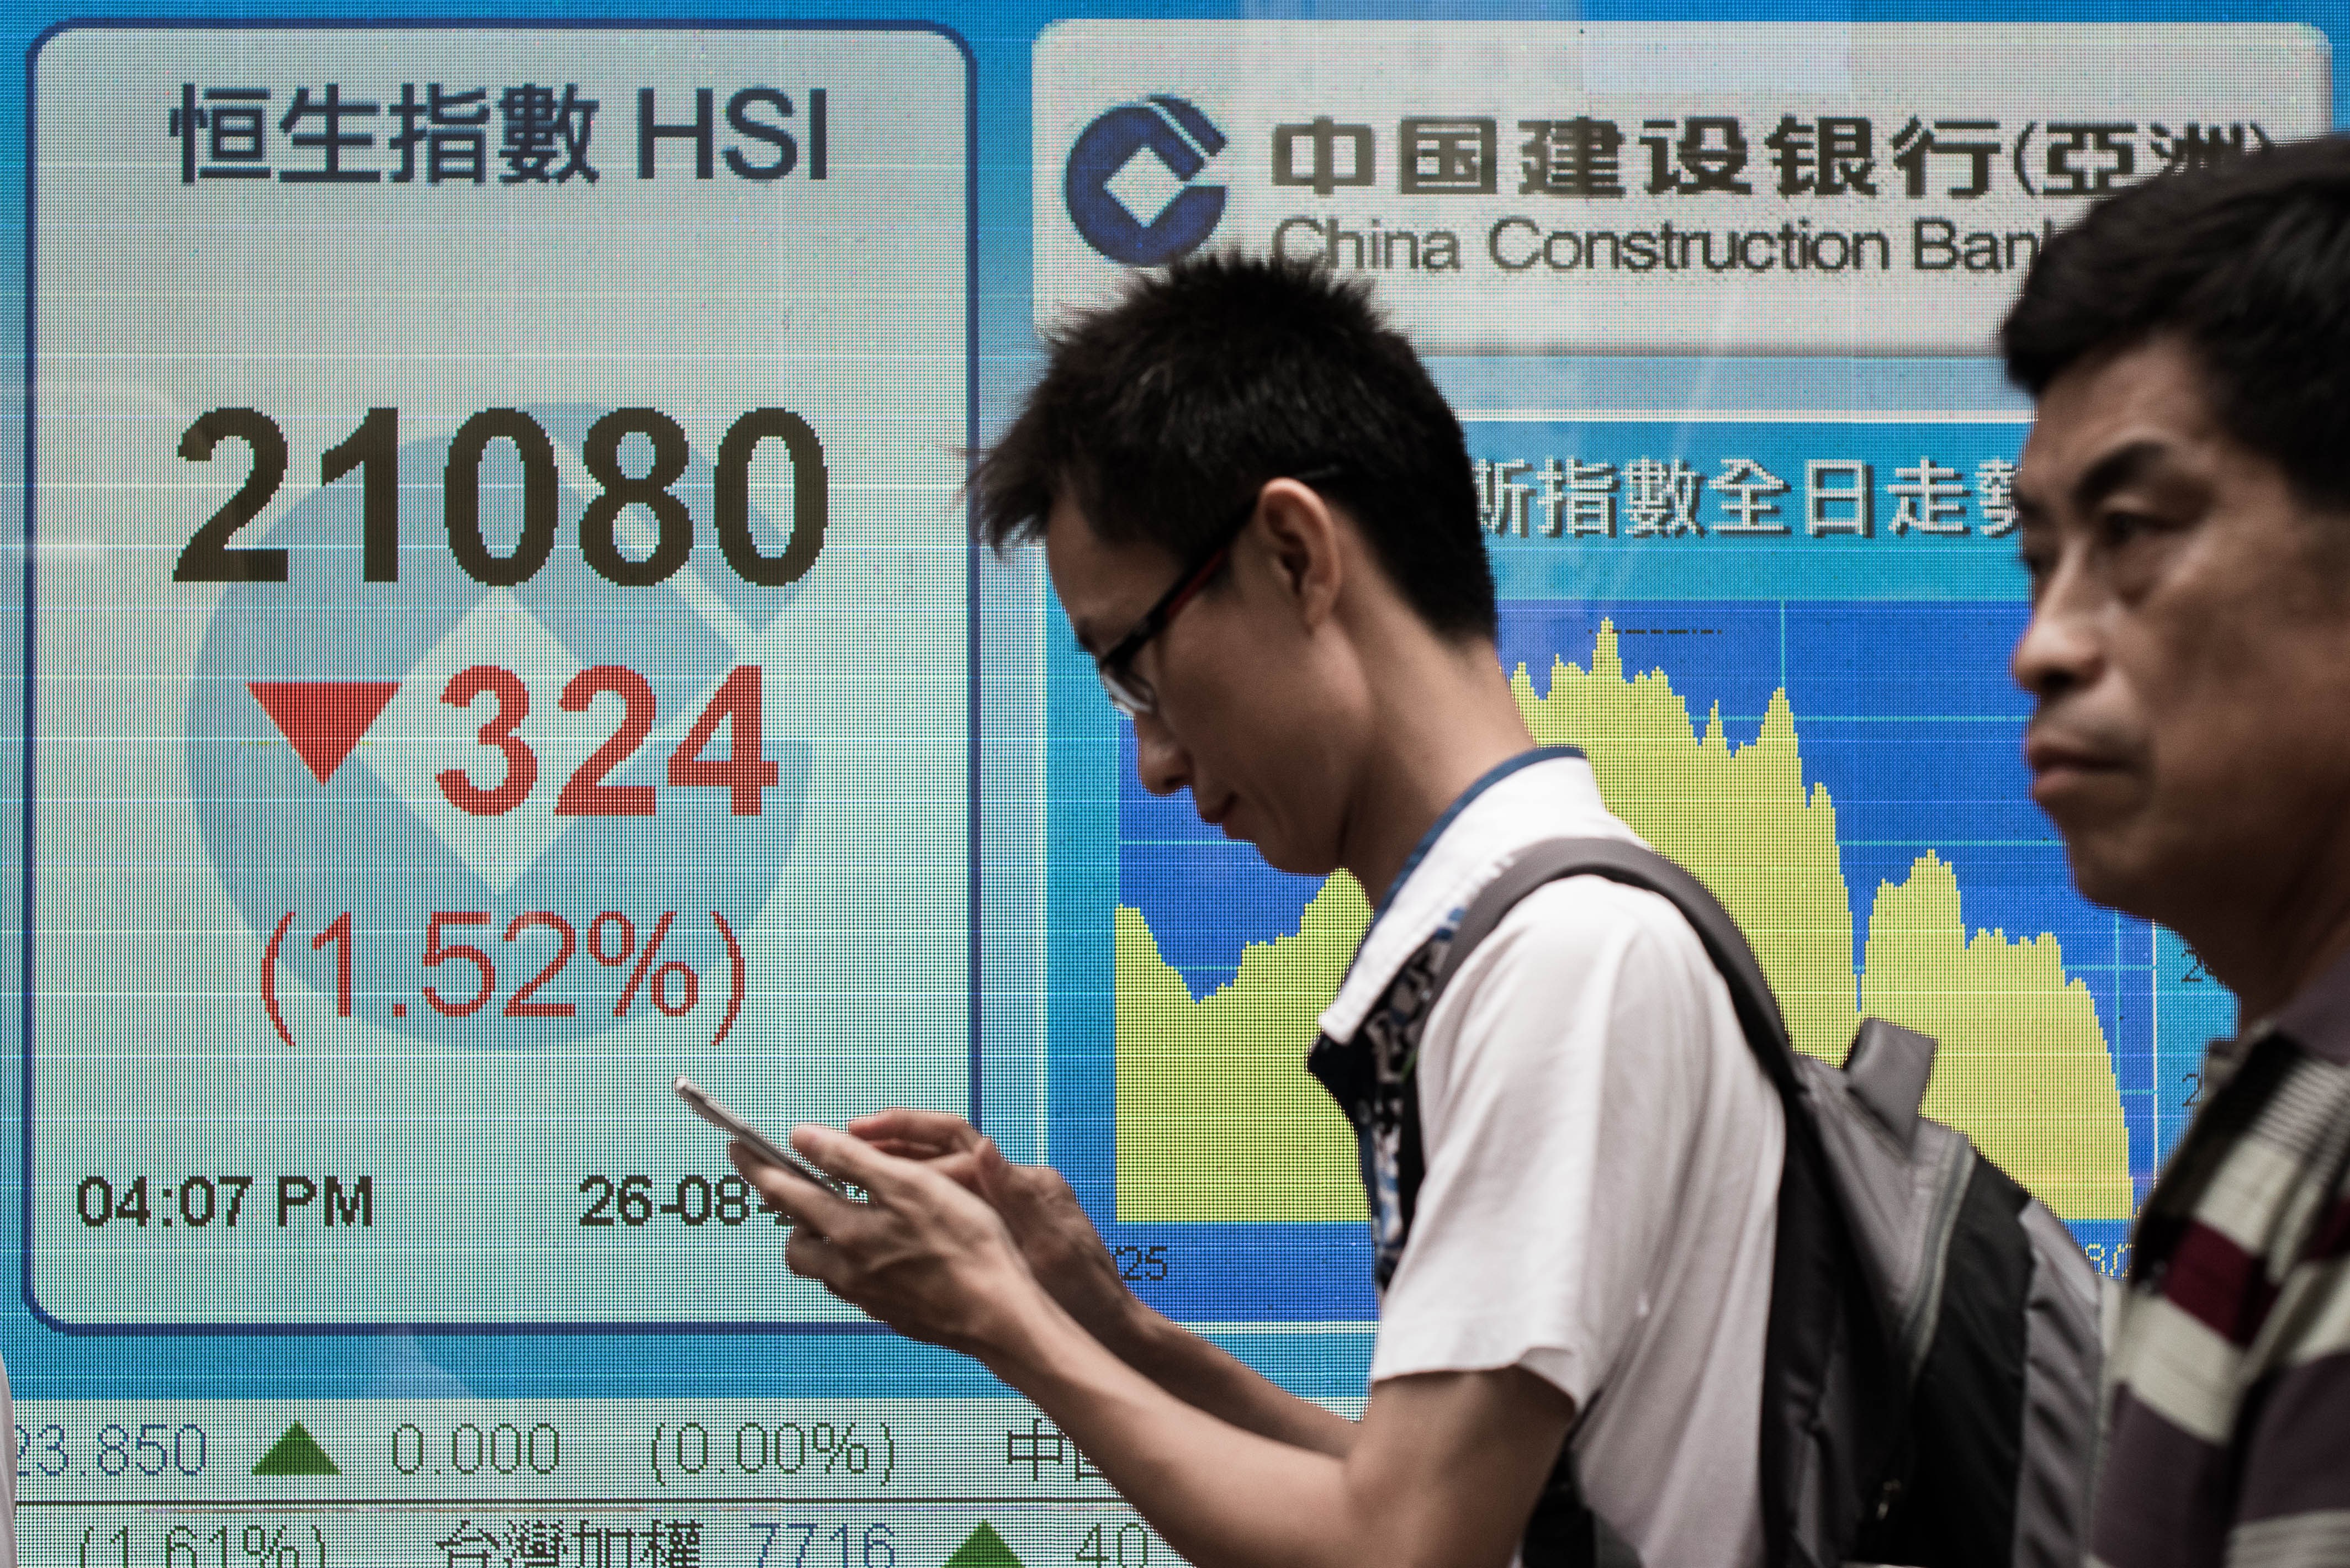 Chinas Regierung gründet „Super-Finanzaufsicht“ zur Marktkontrolle